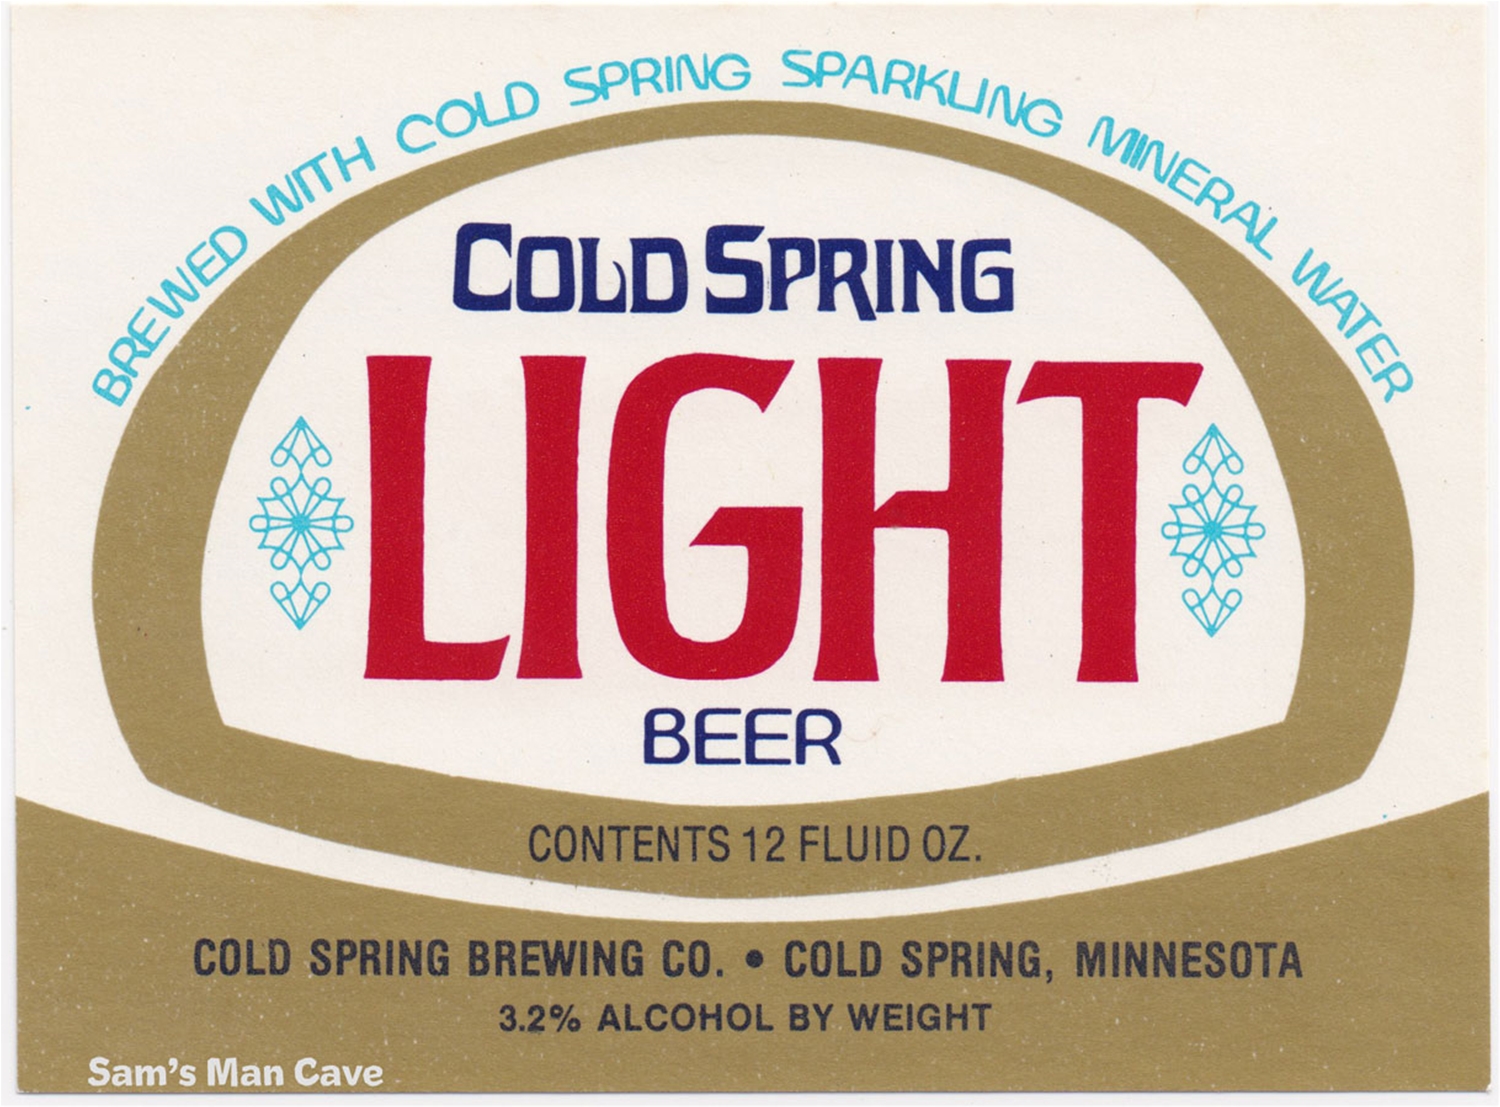 Cold Spring Light Beer Label